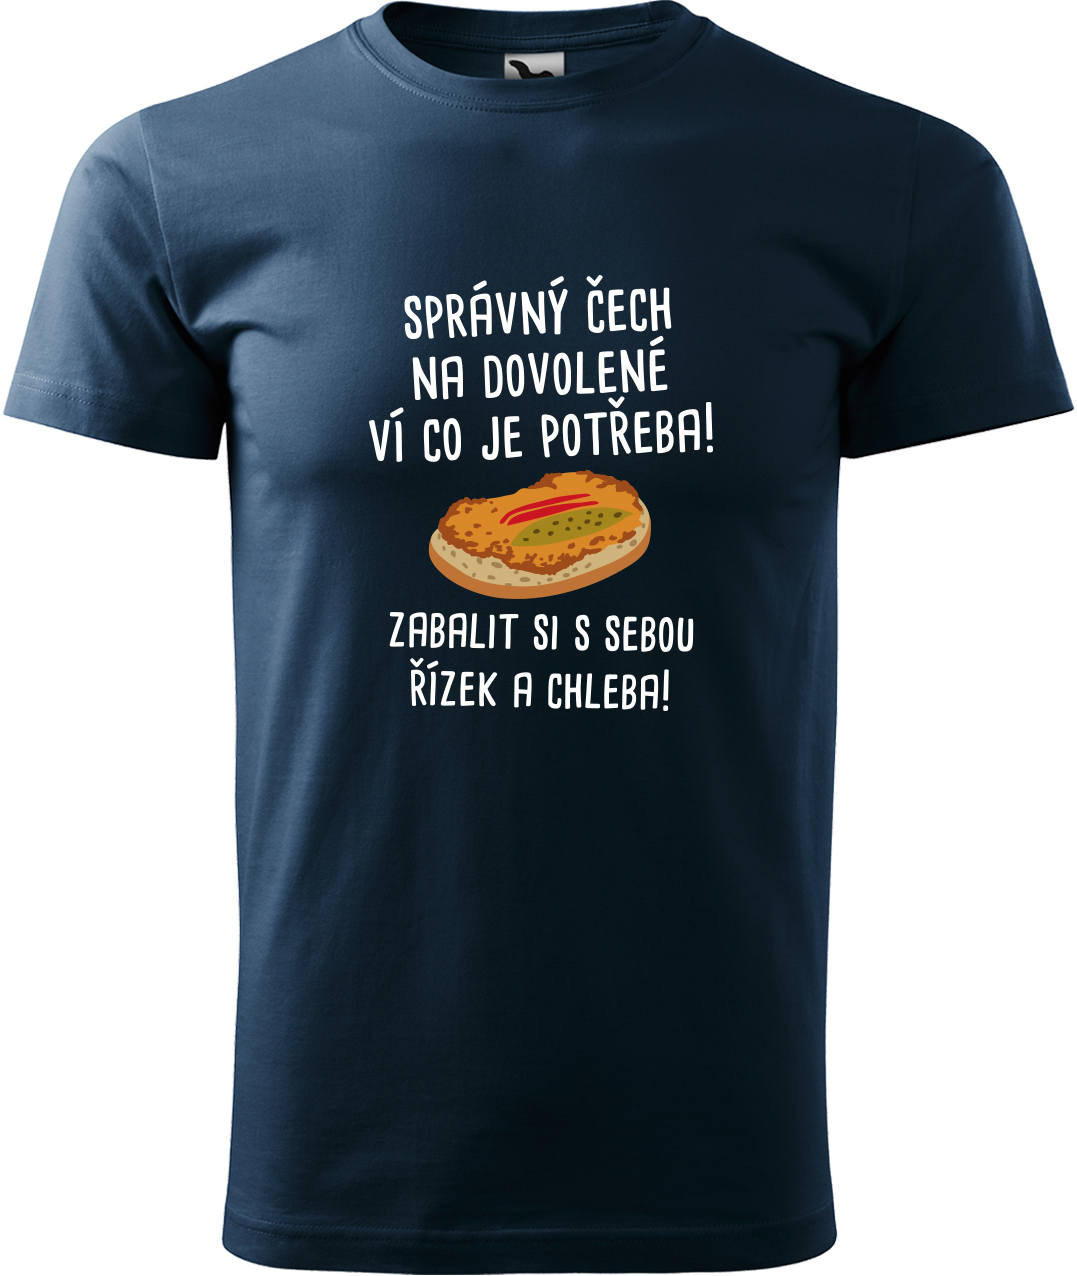 Pánské cestovatelské tričko - Správný Čech na dovolené, ví co je potřeba! Velikost: S, Barva: Námořní modrá (02), Střih: pánský